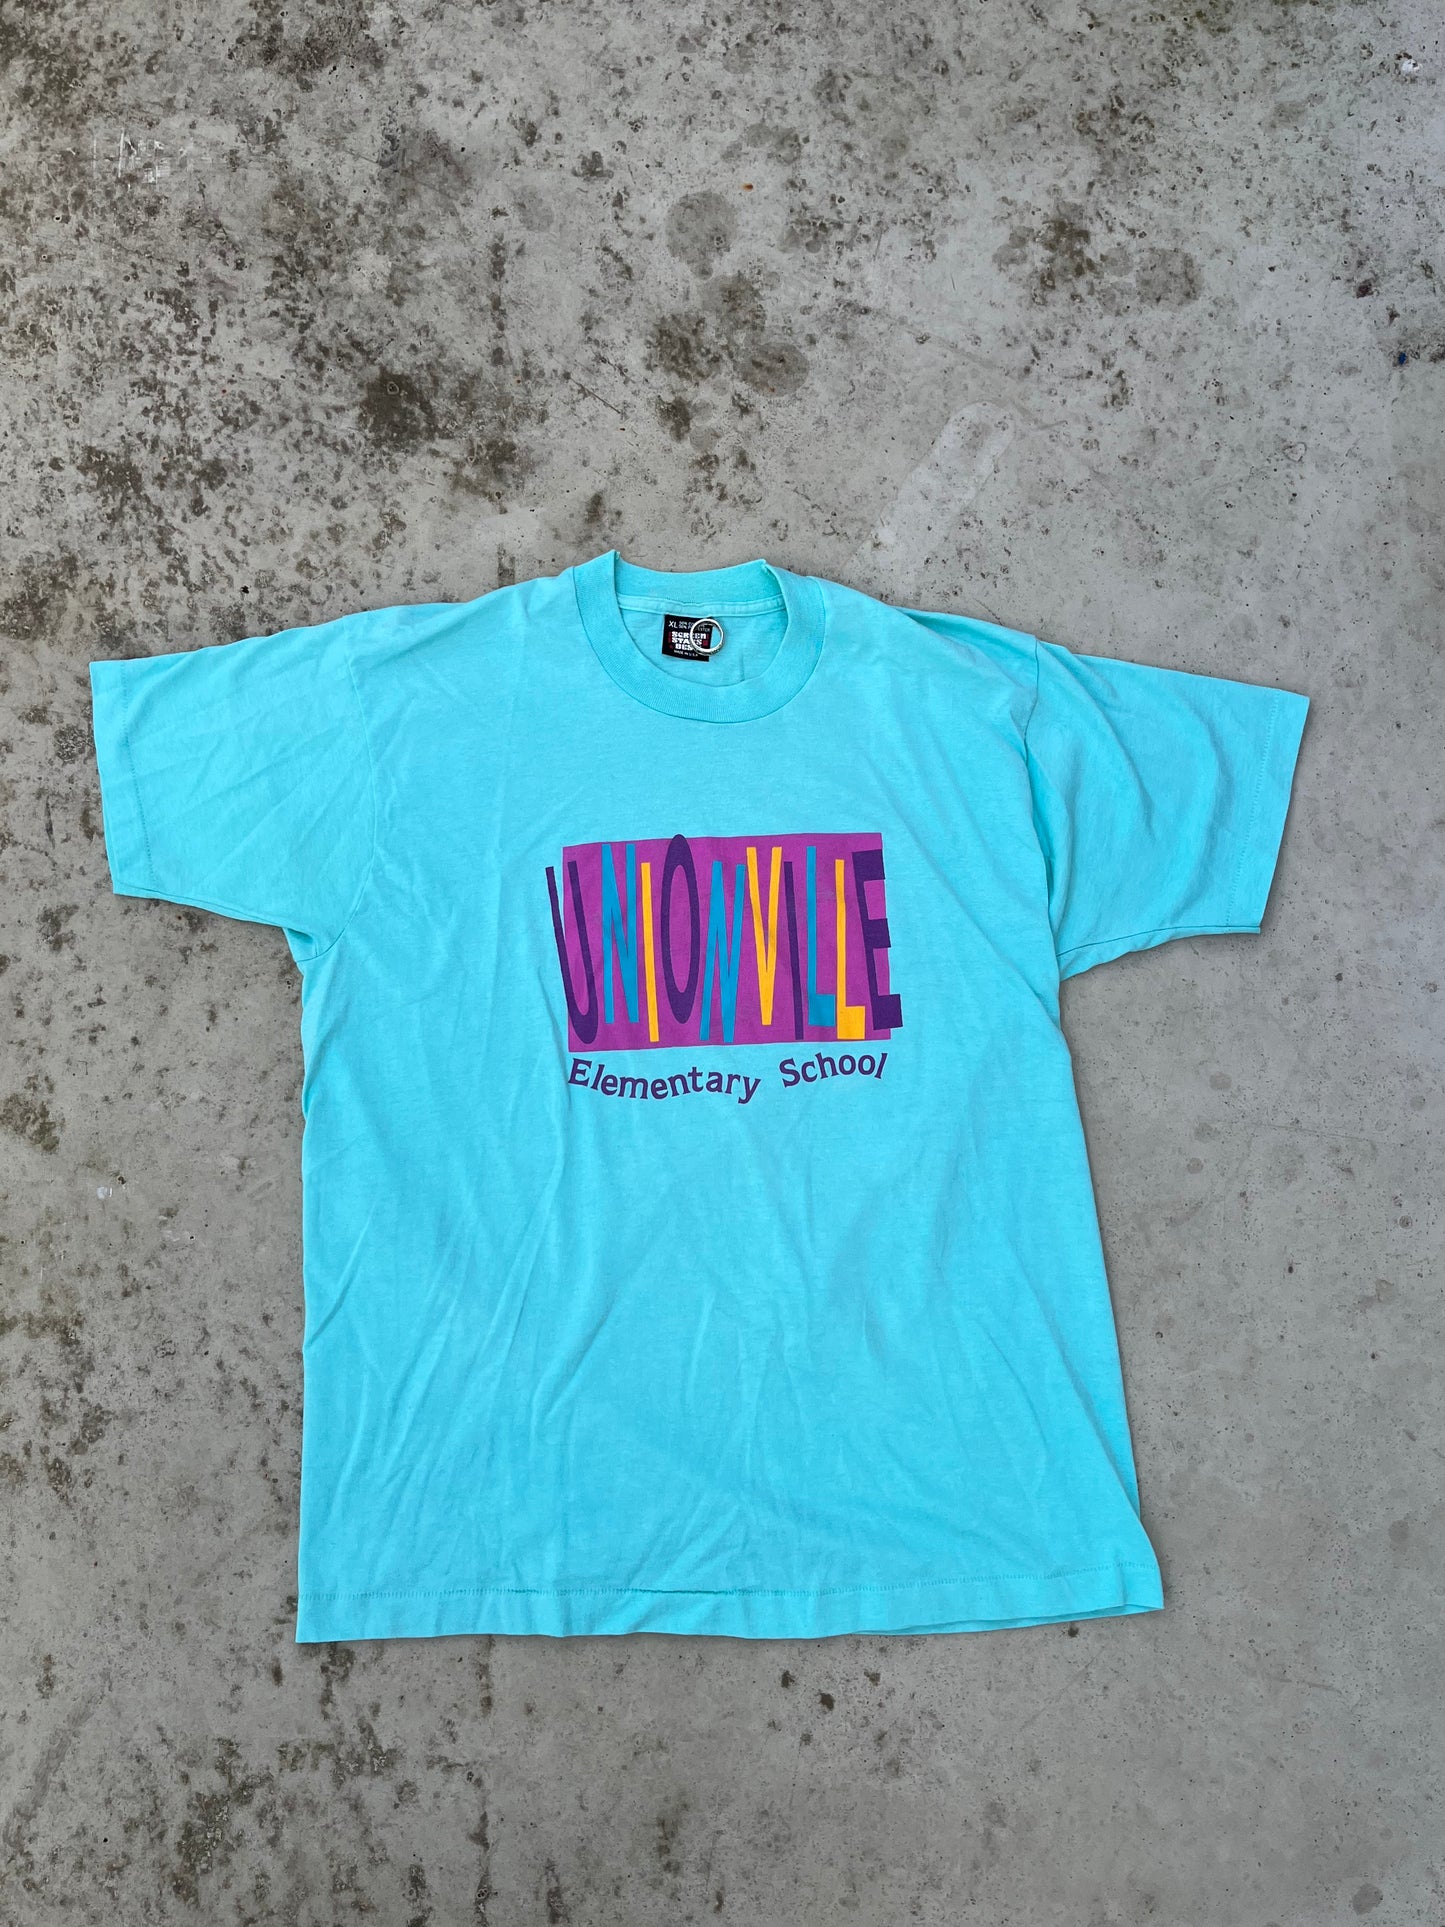 Vintage 90’s T-shirt